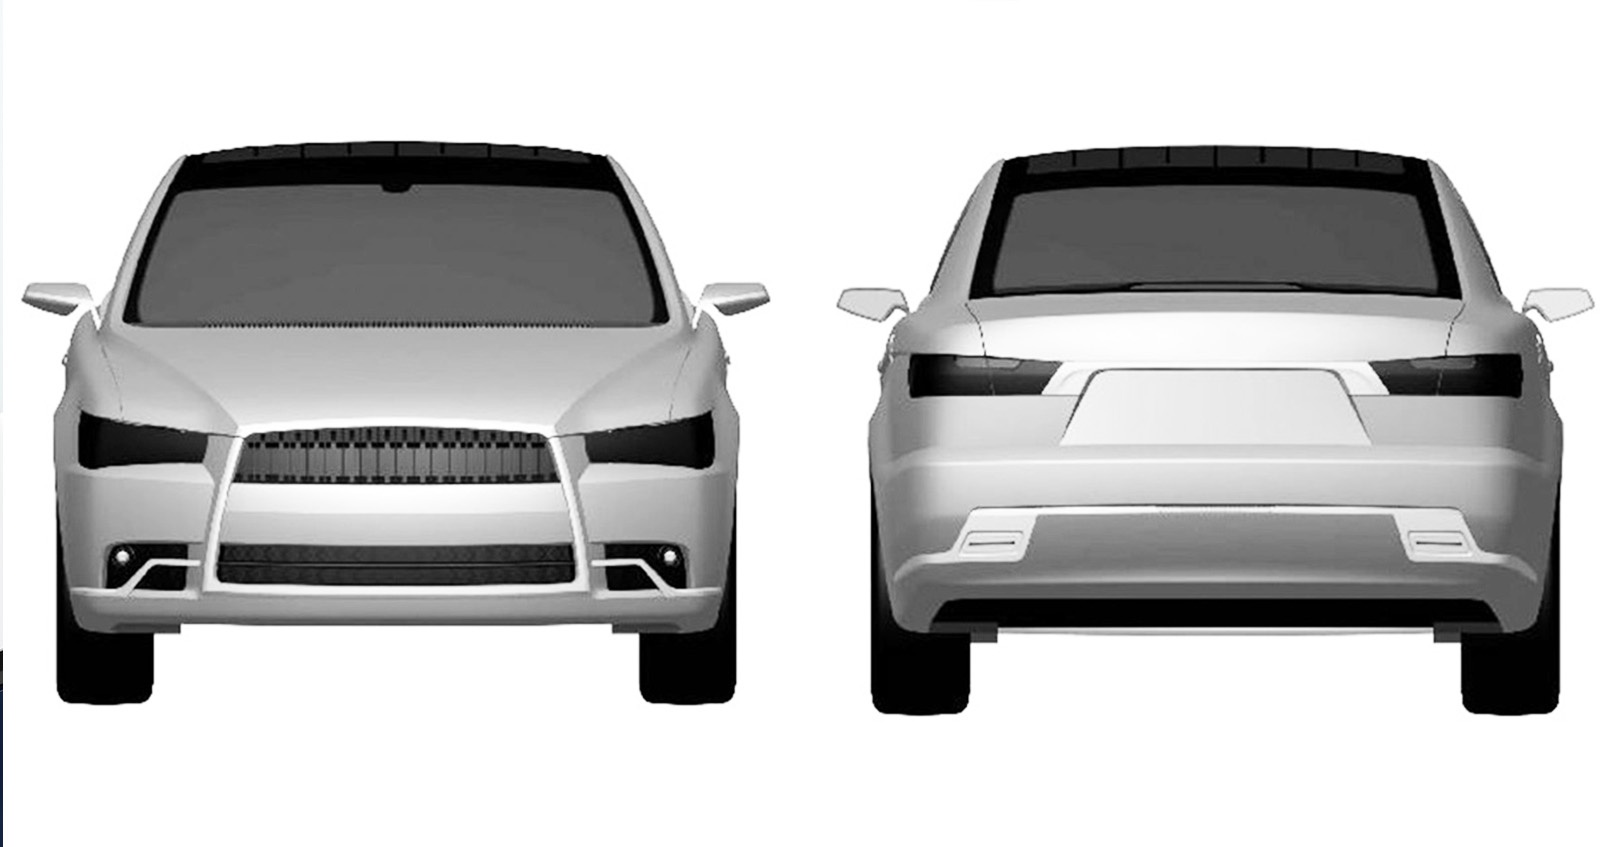 ภาพสิทธิบัตร Mitsubishi Galant เจน 10 DNA Evolution X